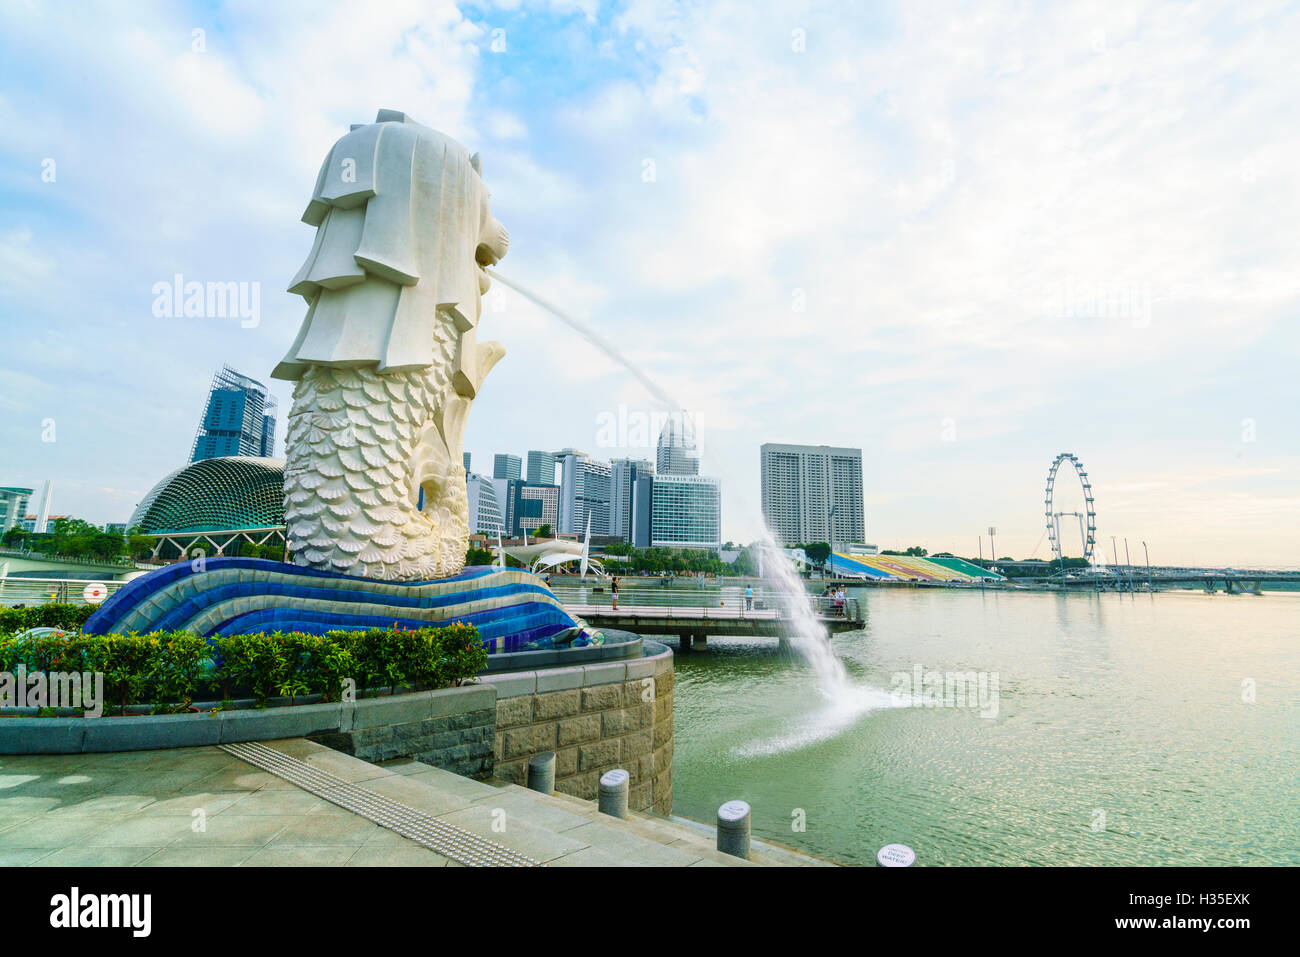 Estatua Merlion, el símbolo nacional de Singapur y su monumento más famoso, el Parque Merlion, Marina Bay, Singapur Foto de stock